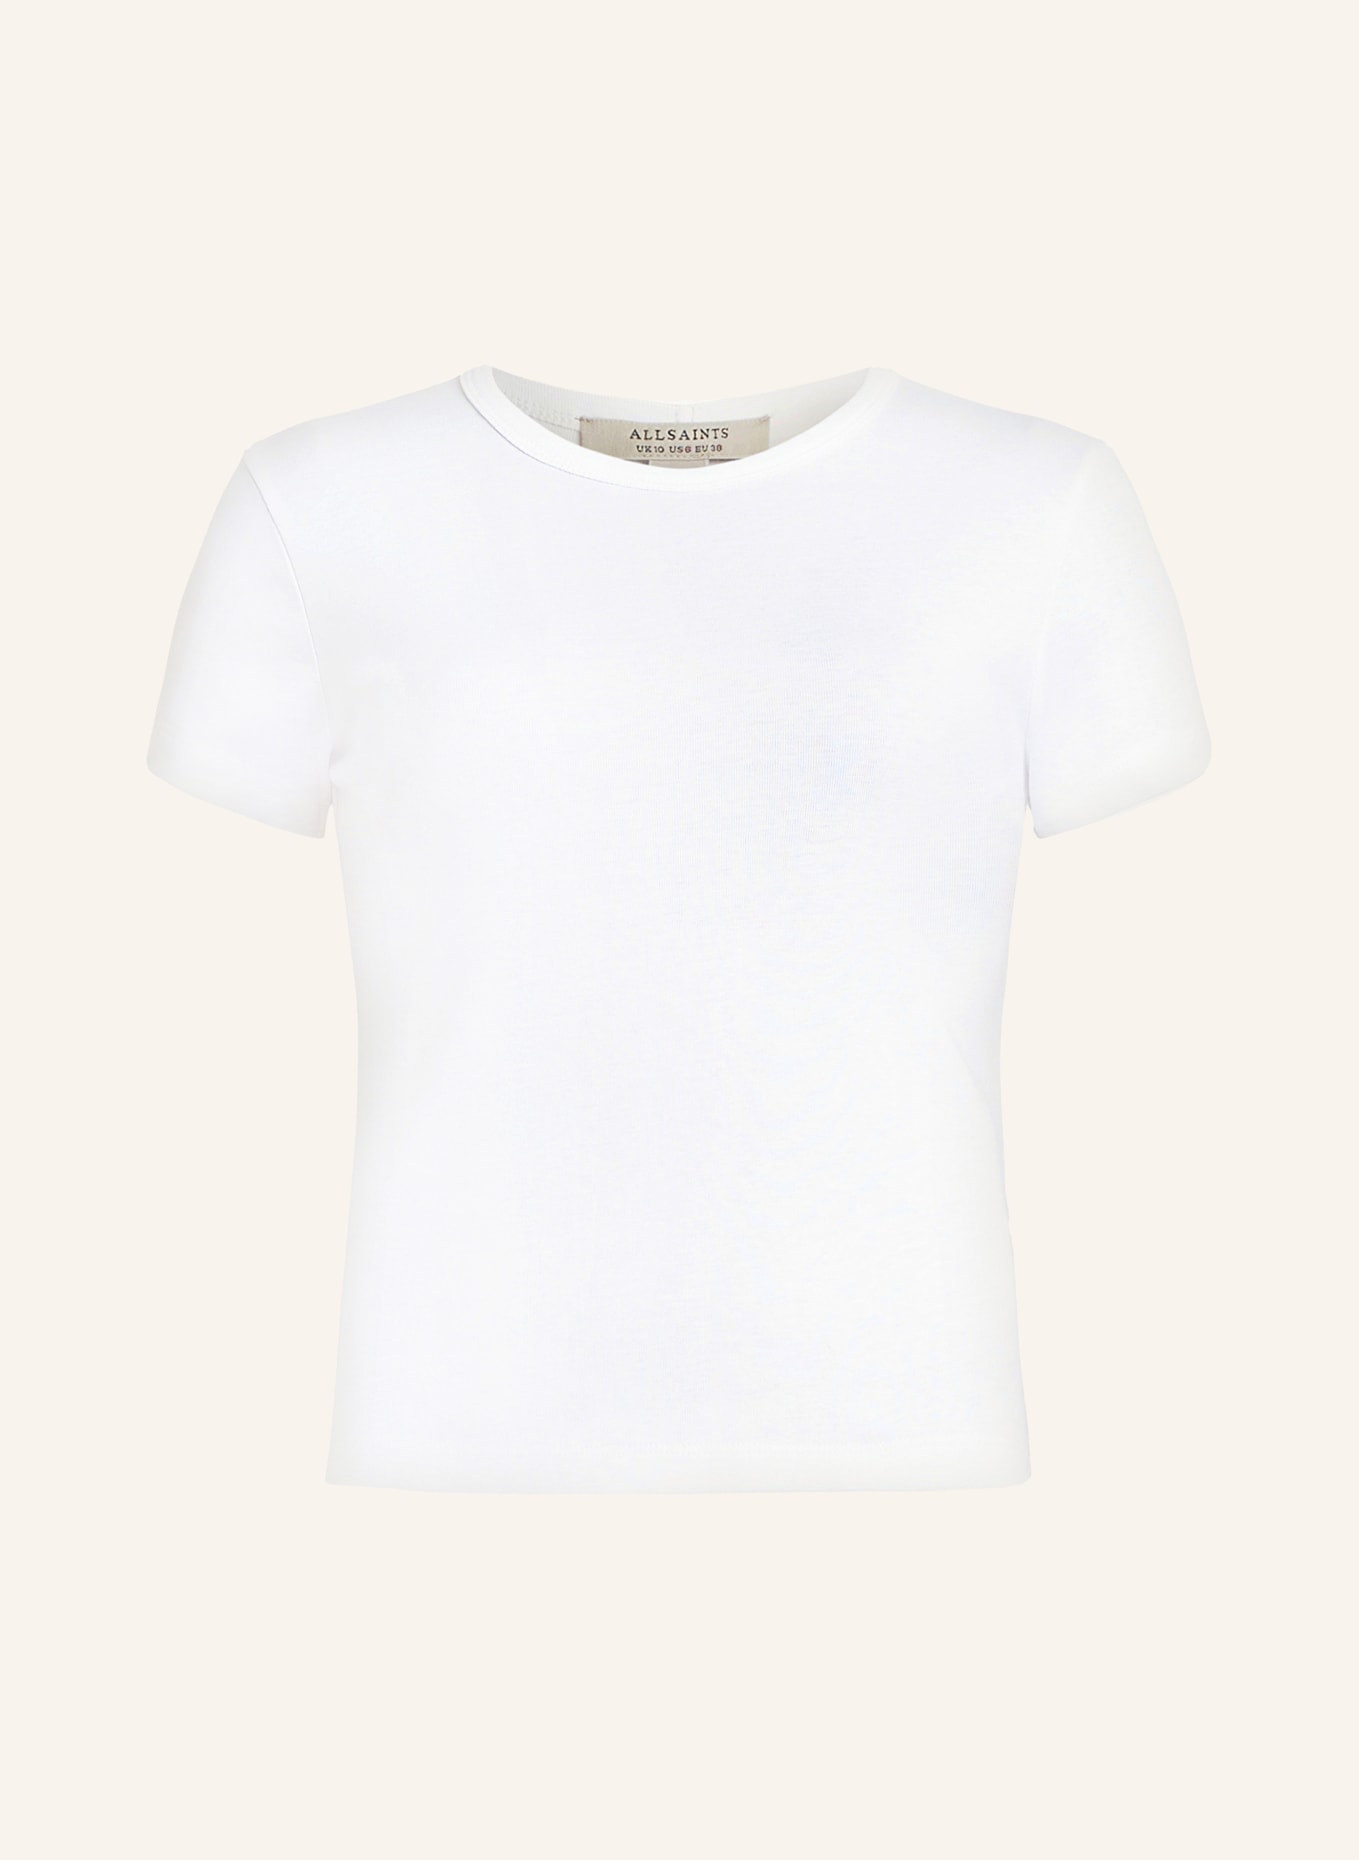 ALLSAINTS T-shirt STEVIE, Color: WHITE (Image 1)